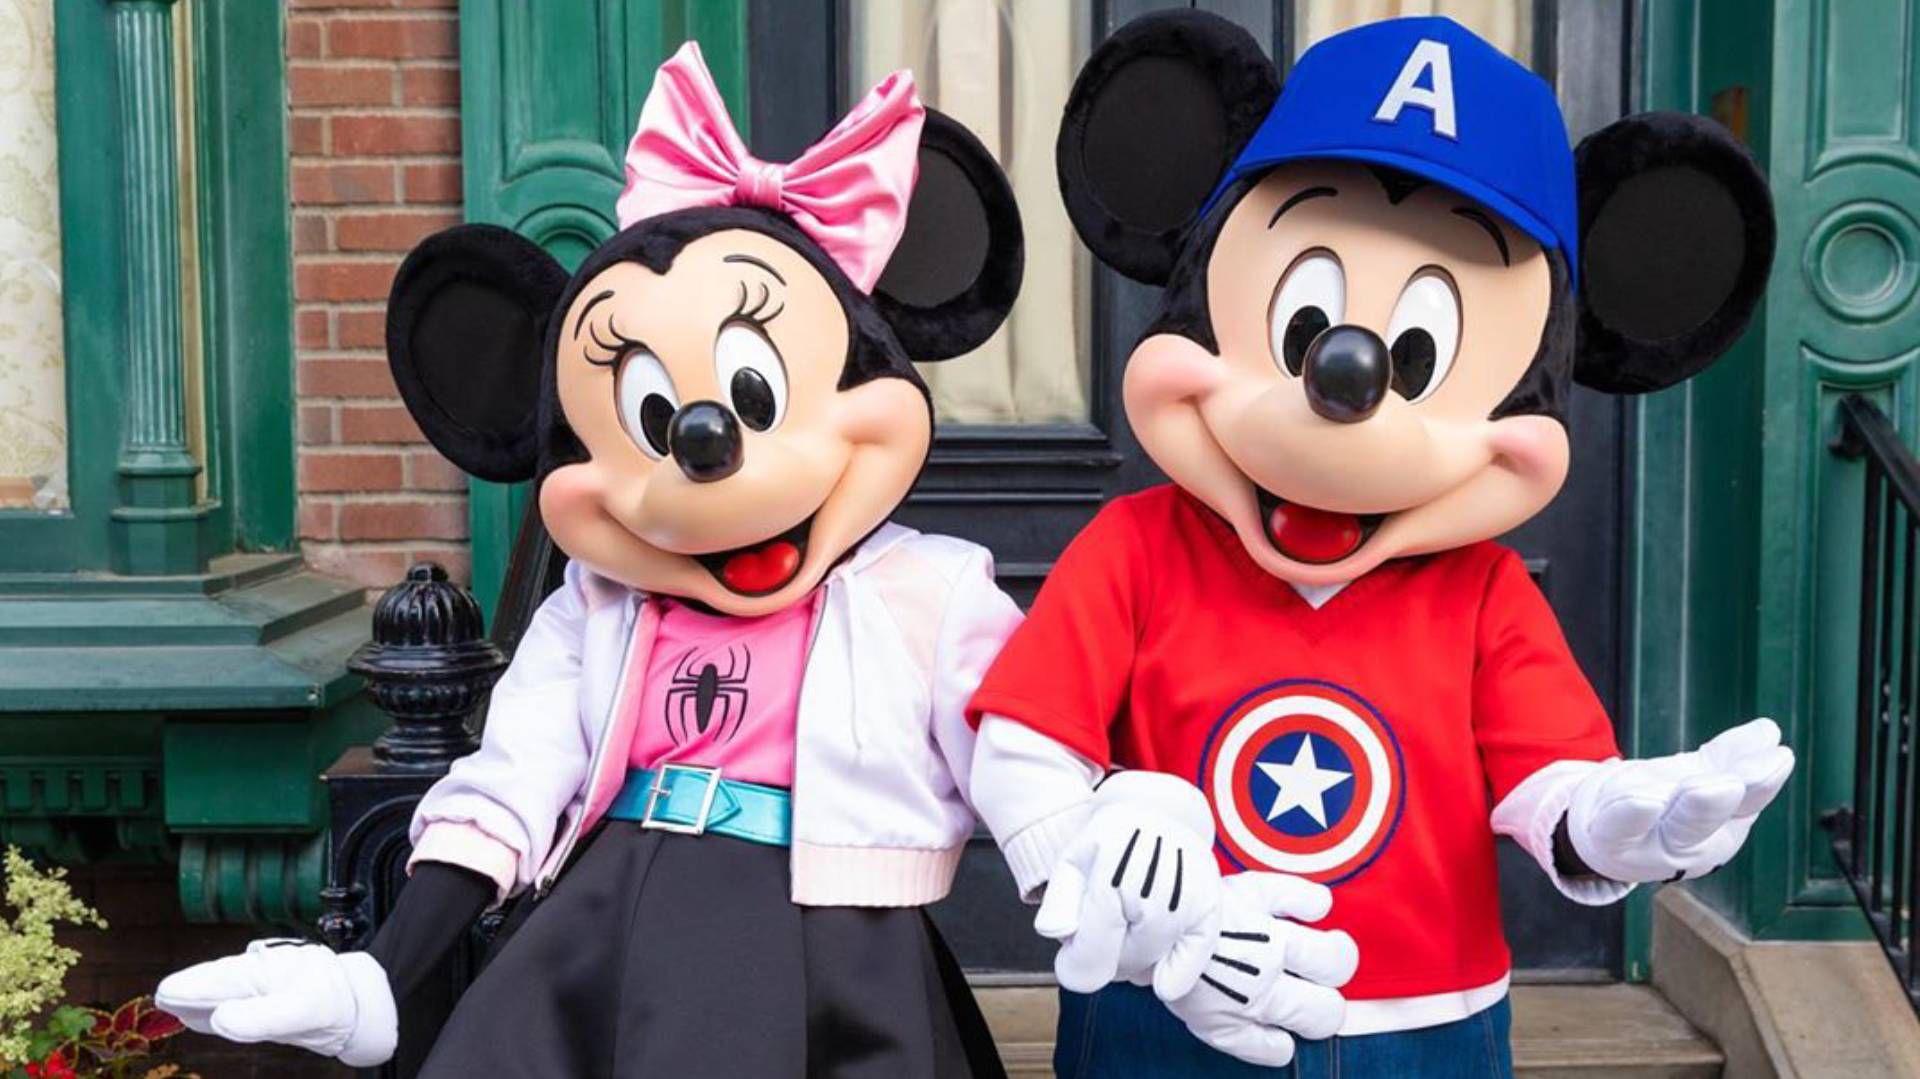 Disneyland presentó descuentos para la primera parte del año (Foto: Instagram @disneyland)